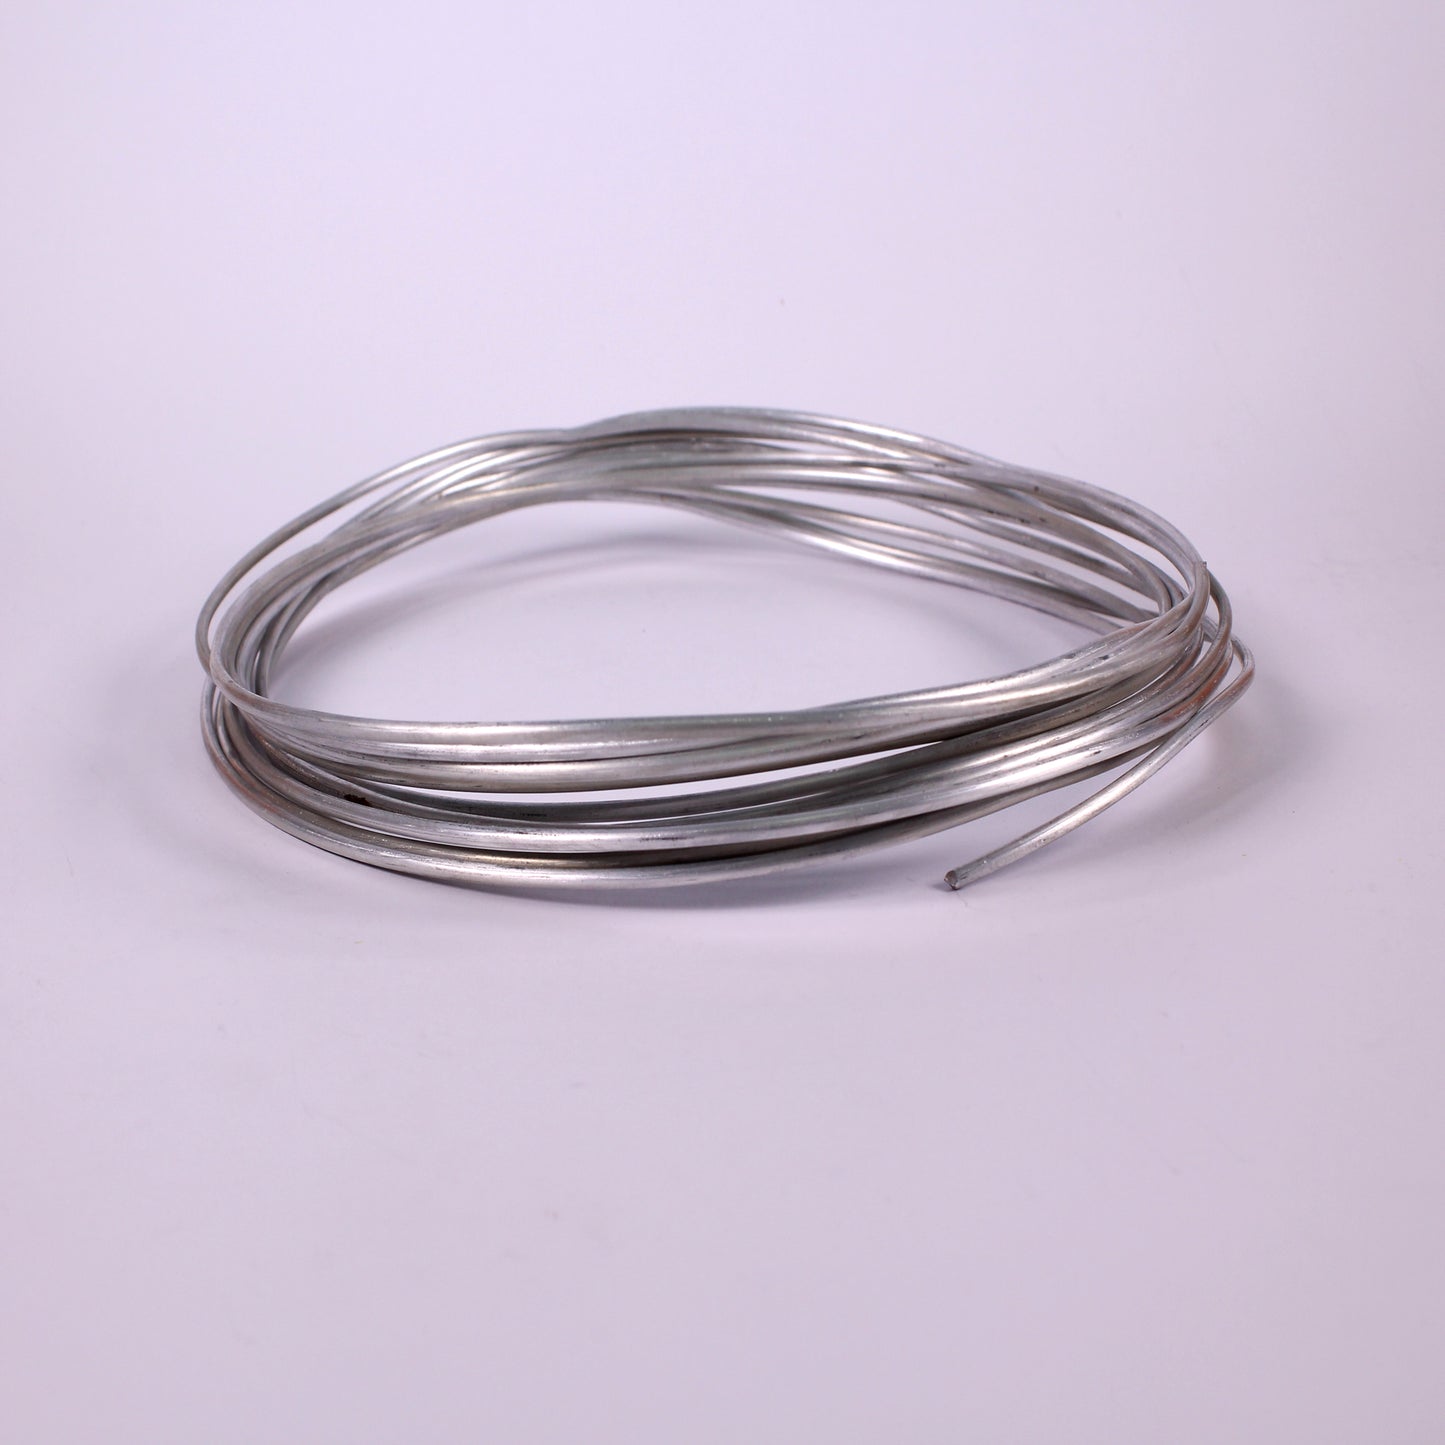 aluminium wire rod